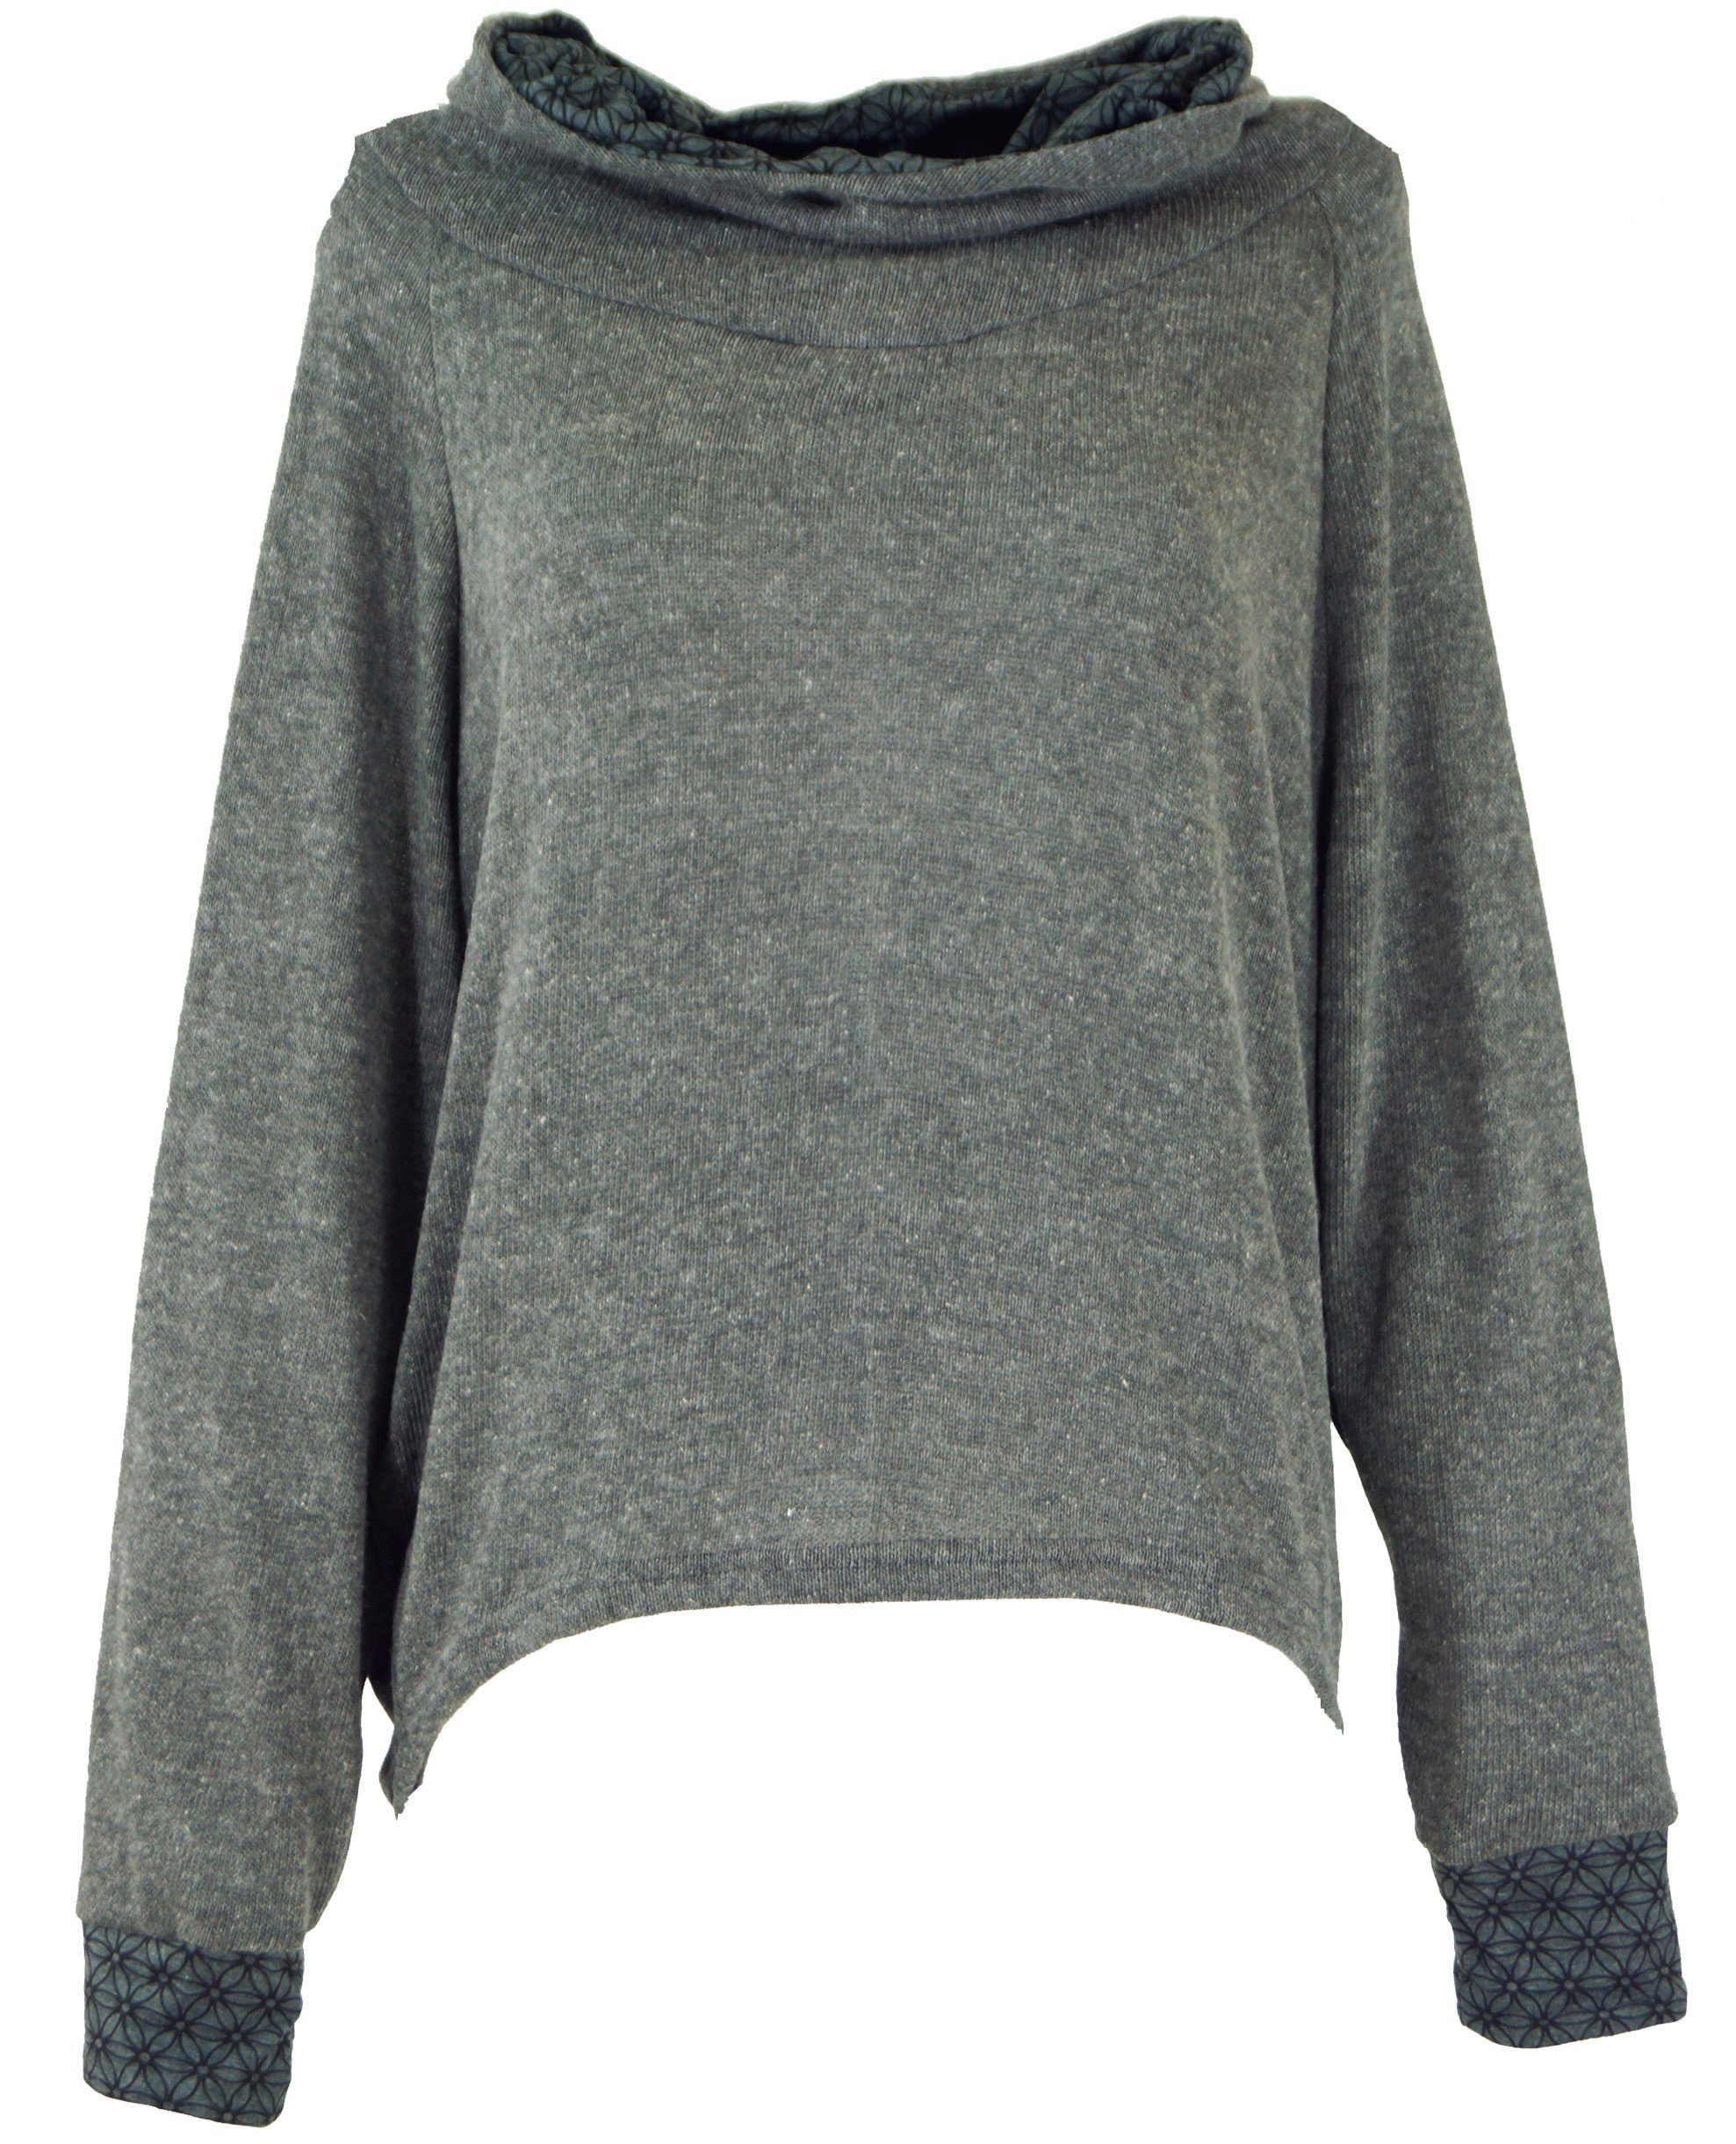 Guru-Shop Longsleeve Hoody, Sweatshirt, Pullover, Kapuzenpullover -.. alternative Bekleidung grau